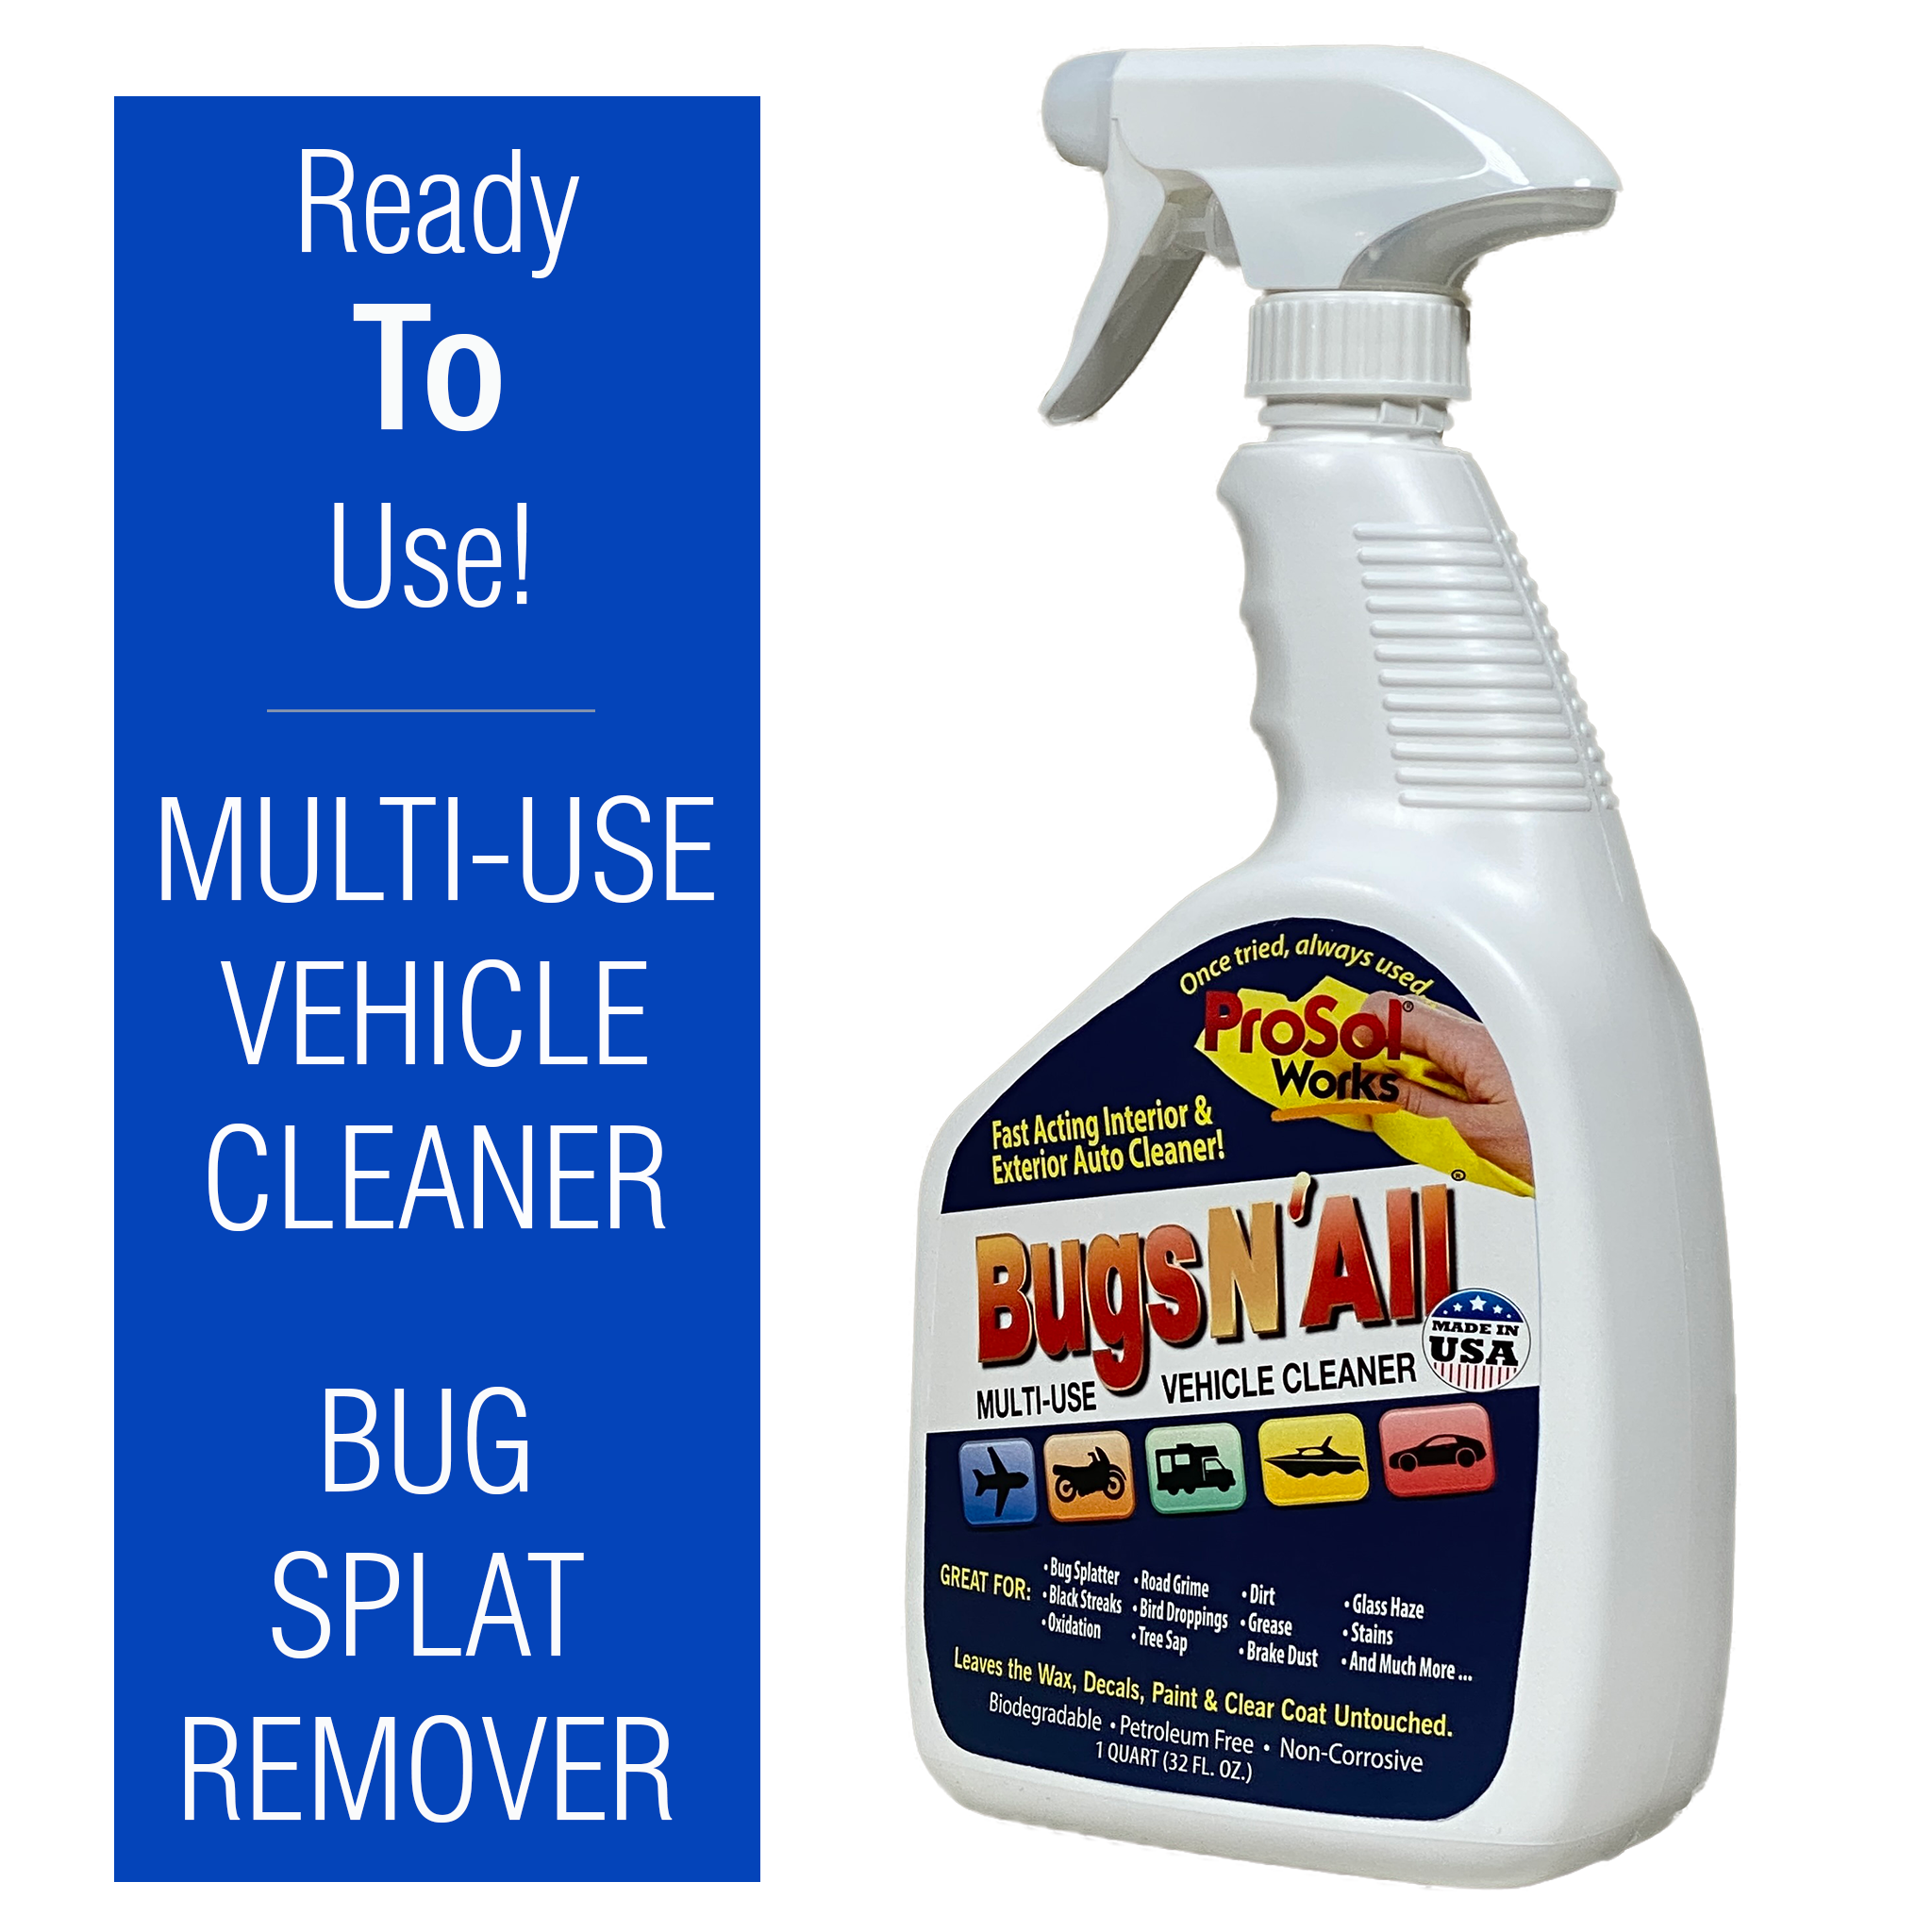  Poop-Off Bird Poop Remover Sprayer, 32-Ounce 2 Pack : Pet  Supplies